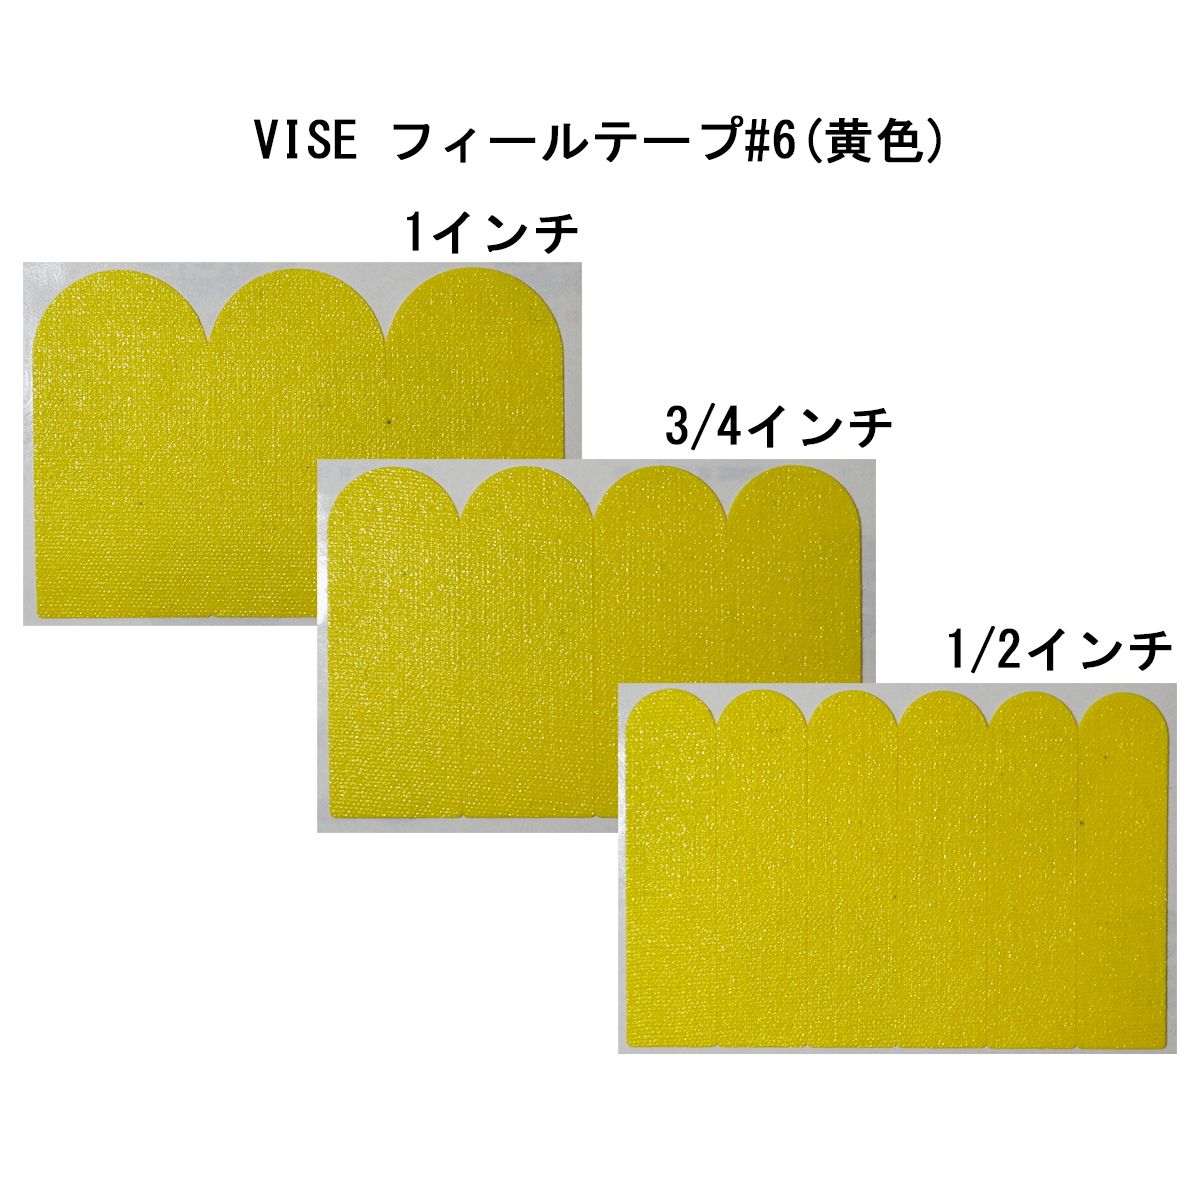 VISE フィールテープ#6(黄色)